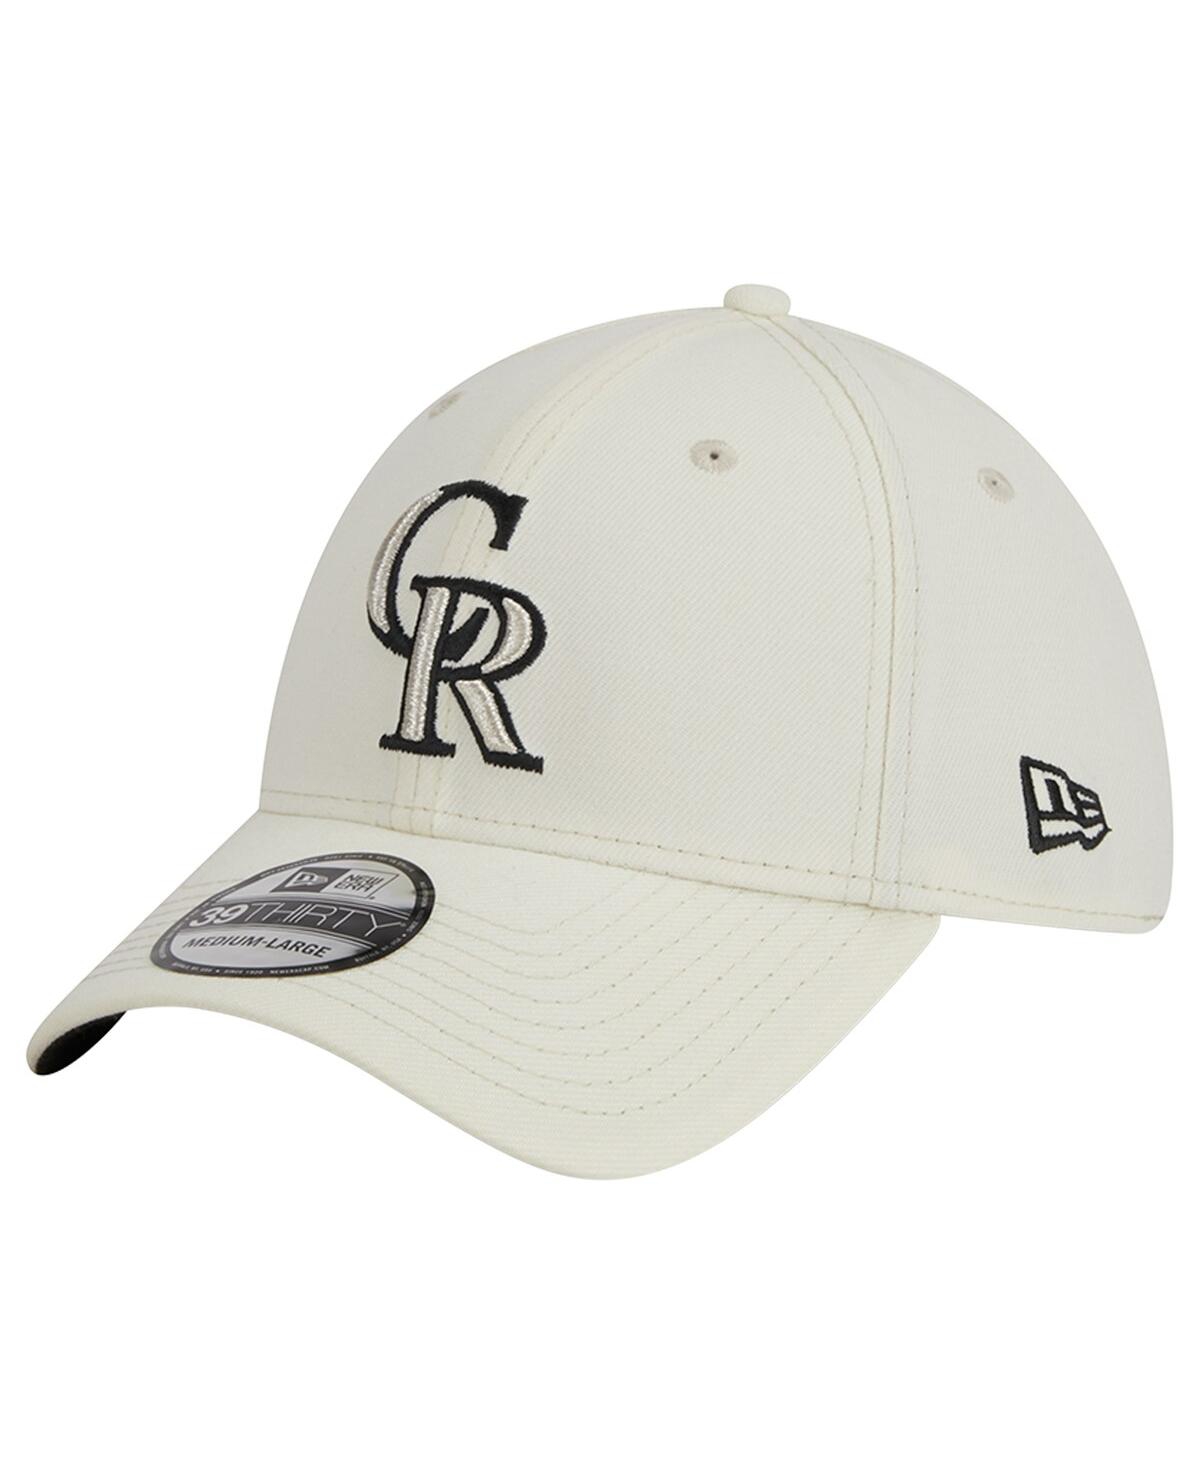 Colorado Rockies Hats in Colorado Rockies Team Shop